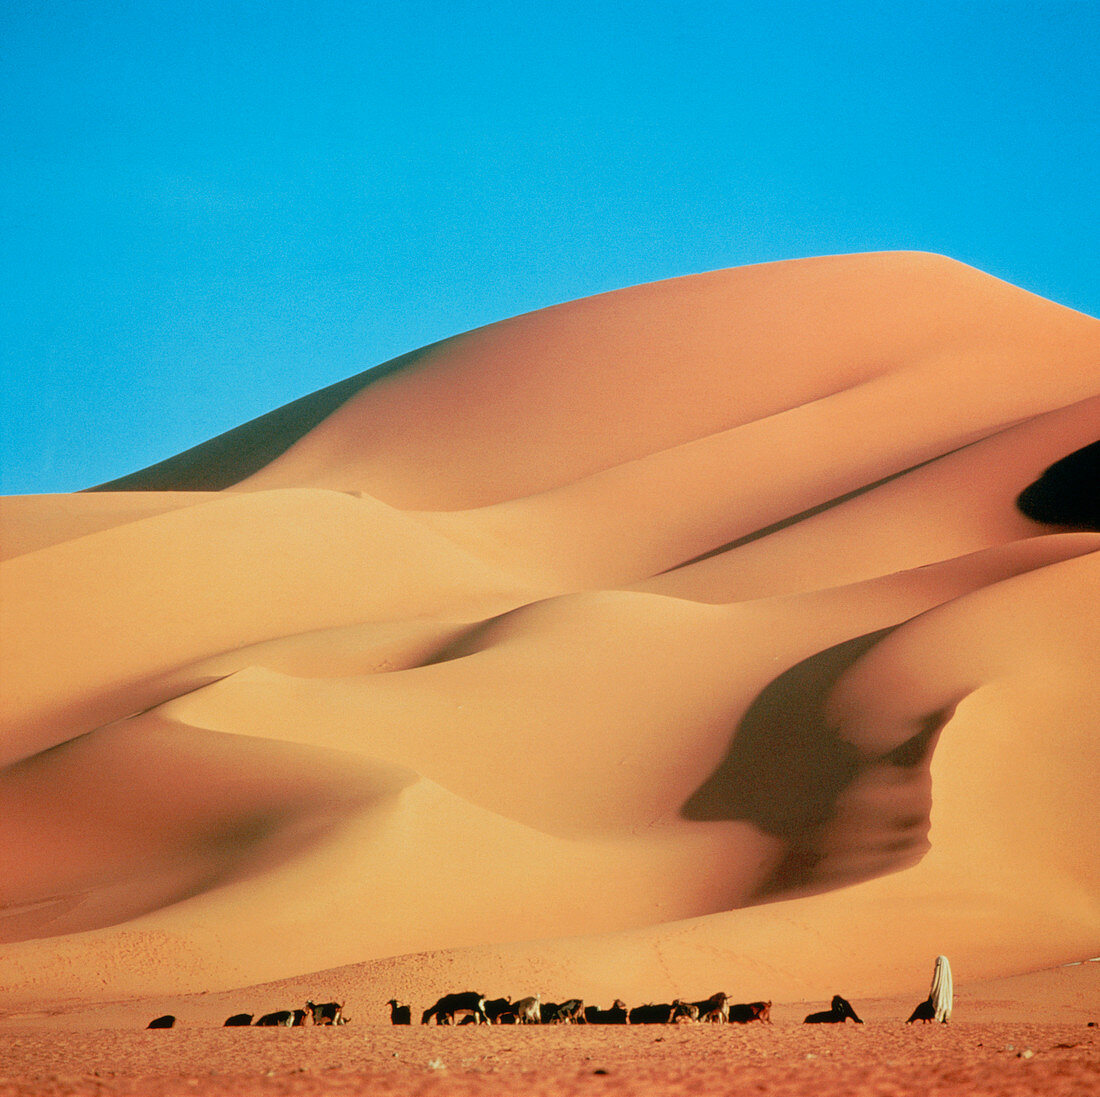 Sand dunes,Algeria